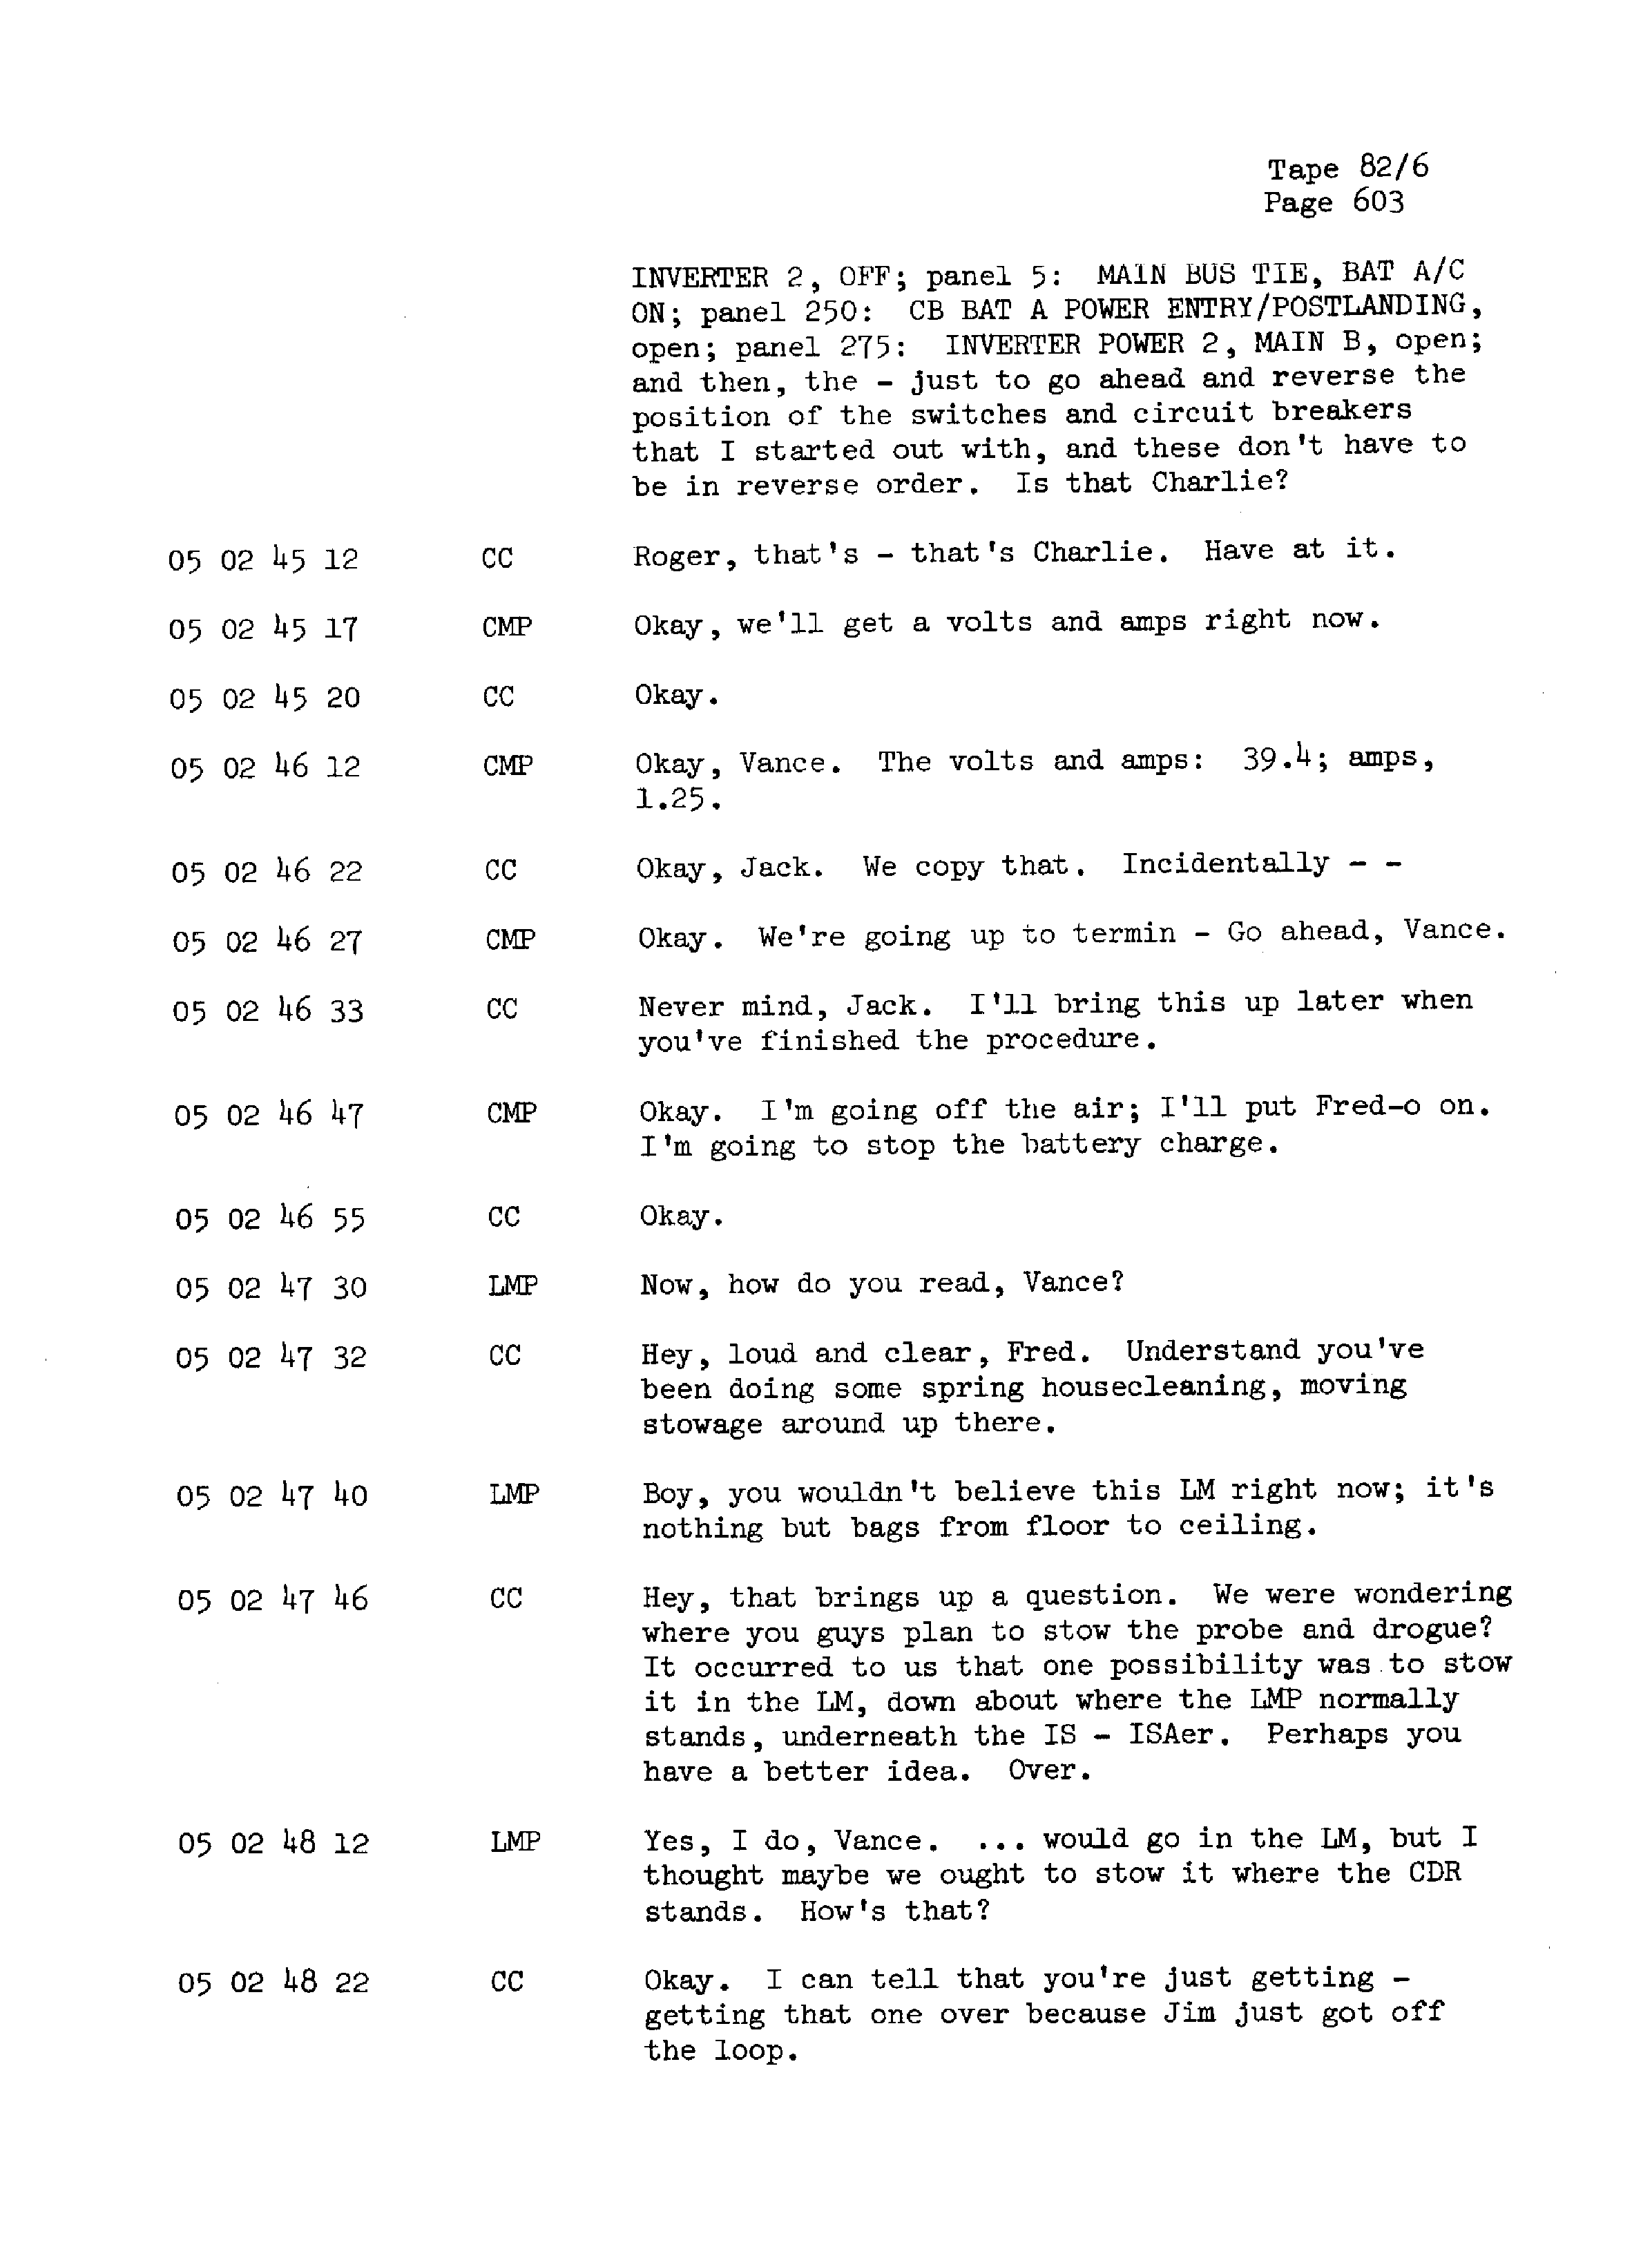 Page 610 of Apollo 13’s original transcript